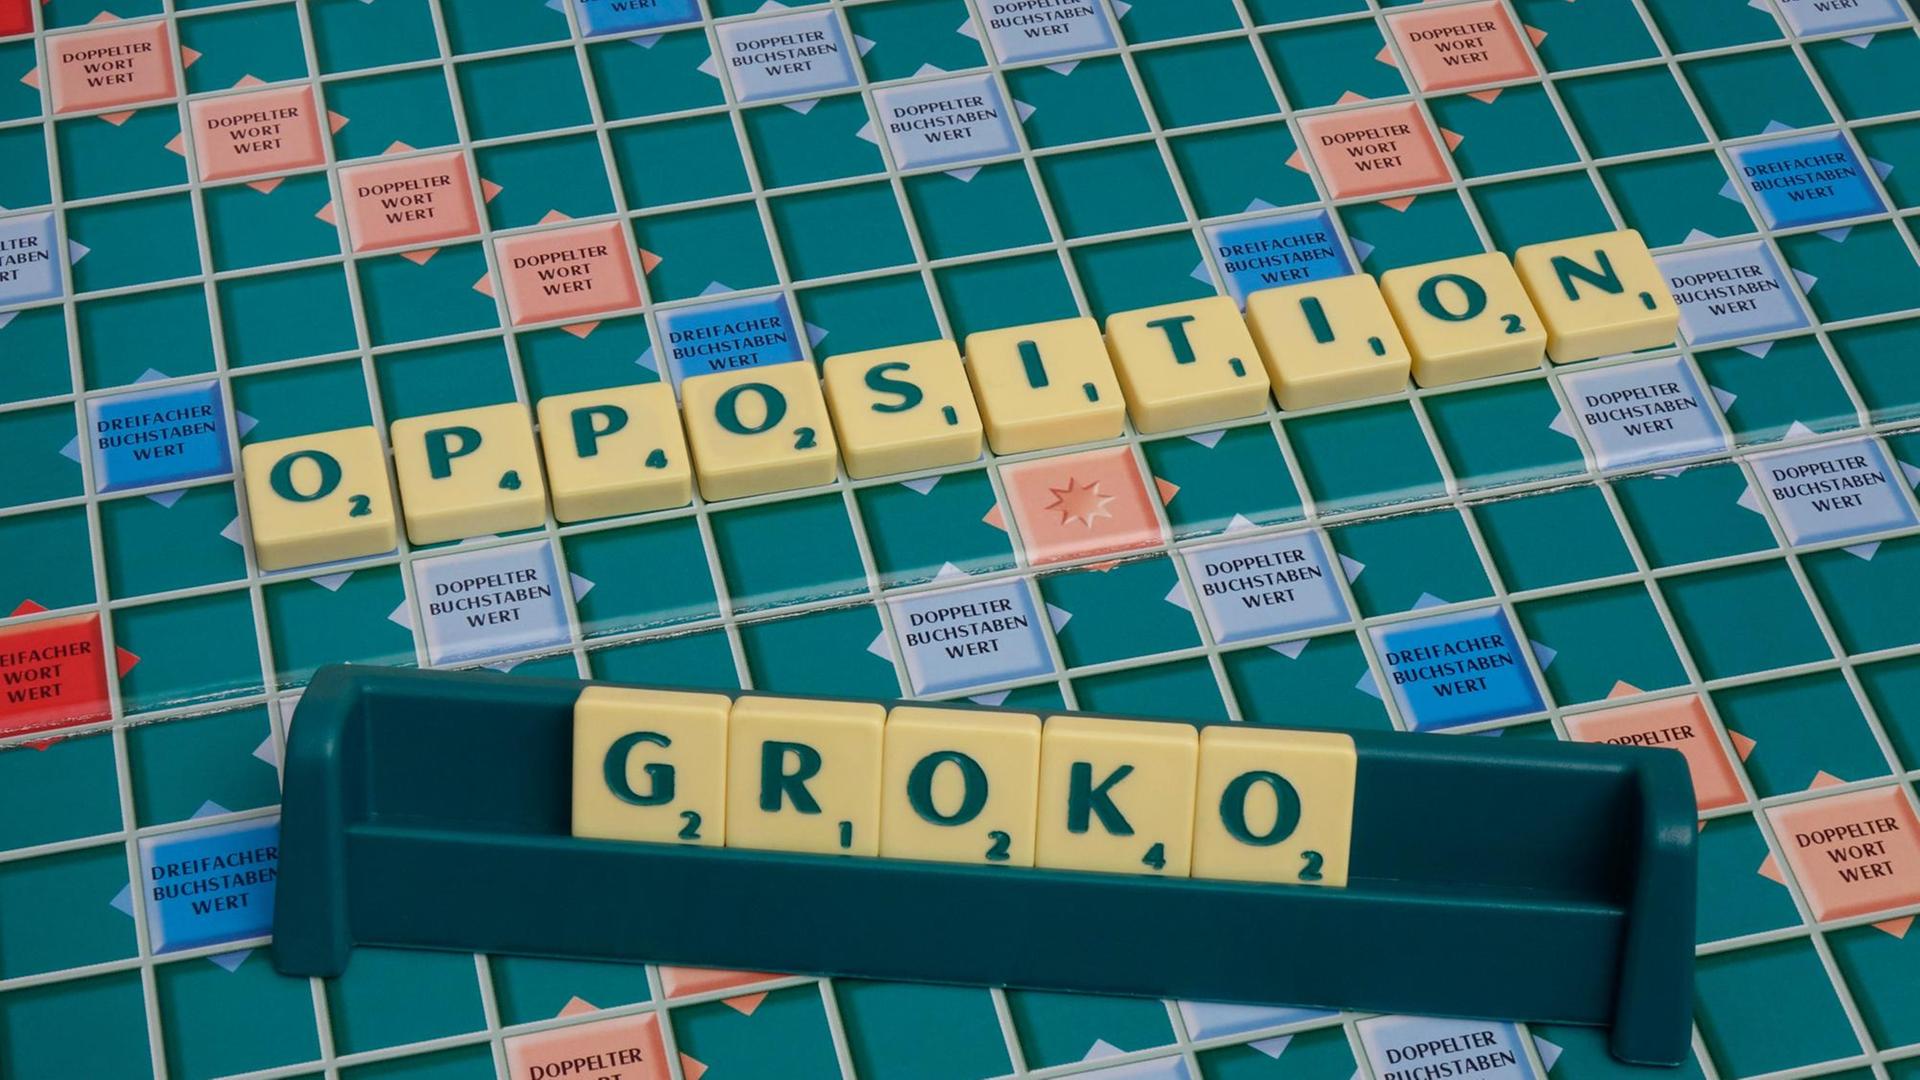 Auf einem Scrabblespiel sind die Worte Groko und Opposition.